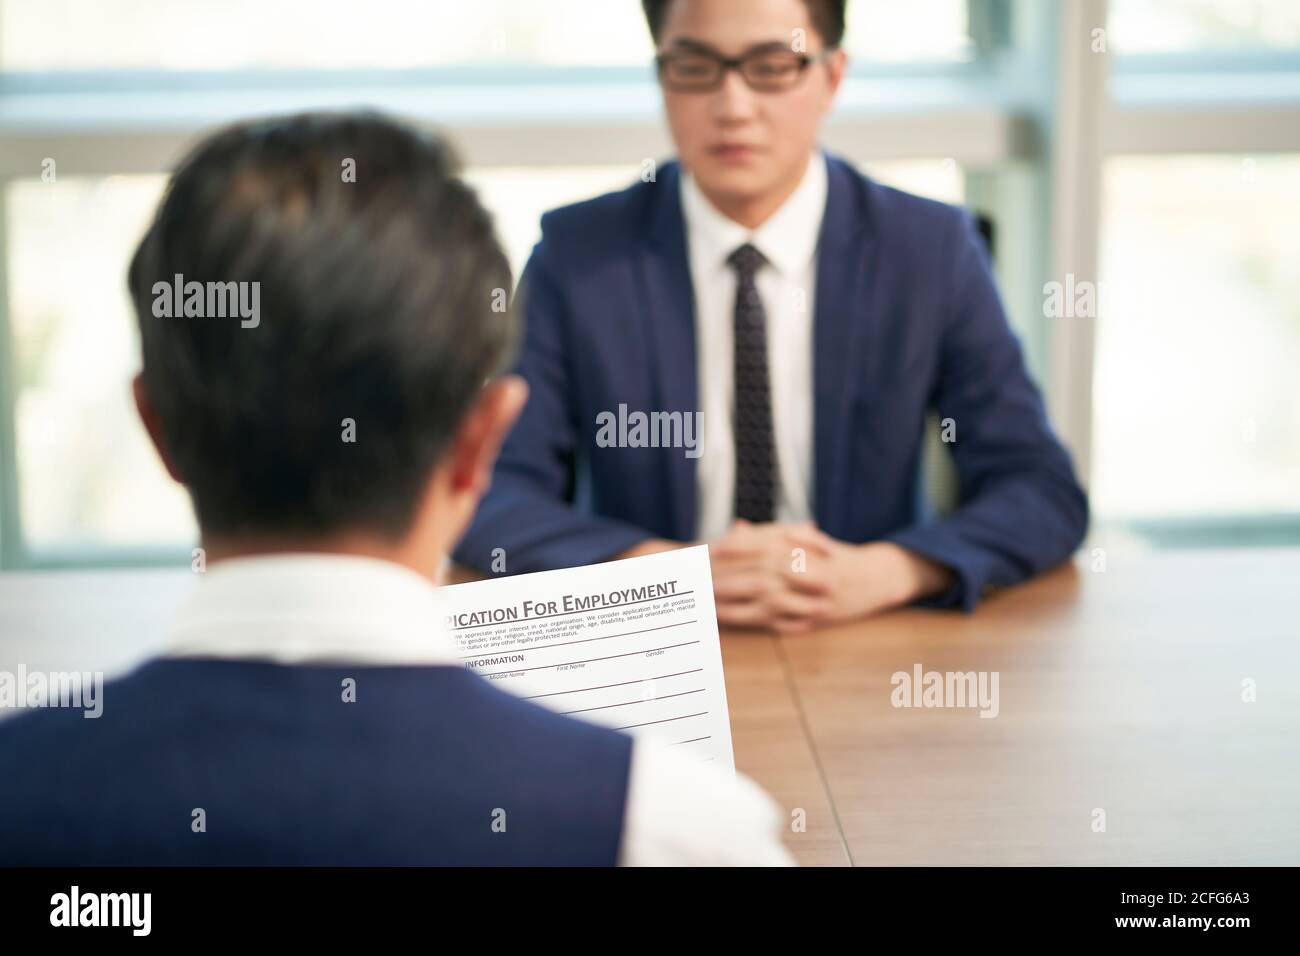 asiatischer HR-Manager, der sich während eines Vorstellungsgesprächs mit der Bewerbung um eine Beschäftigung beschäftigt, konzentriert sich auf das Dokument Stockfoto